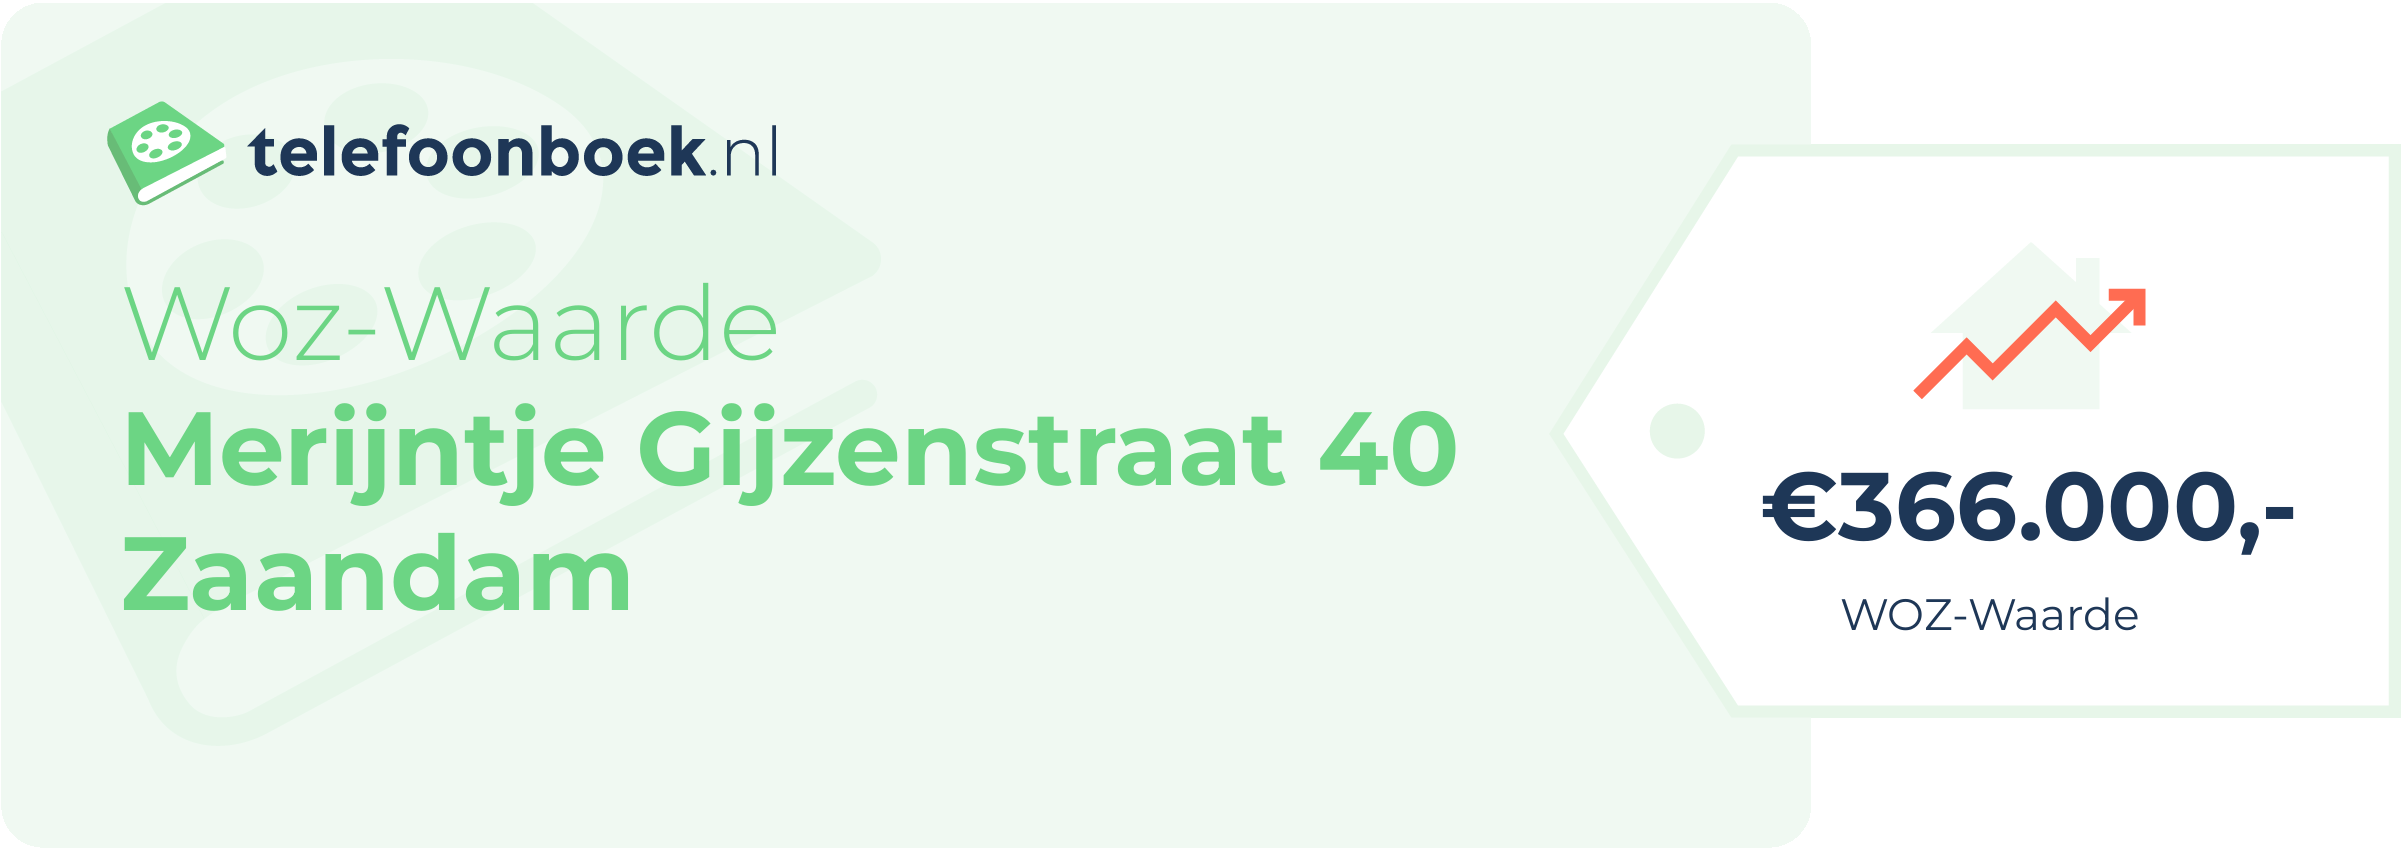 WOZ-waarde Merijntje Gijzenstraat 40 Zaandam